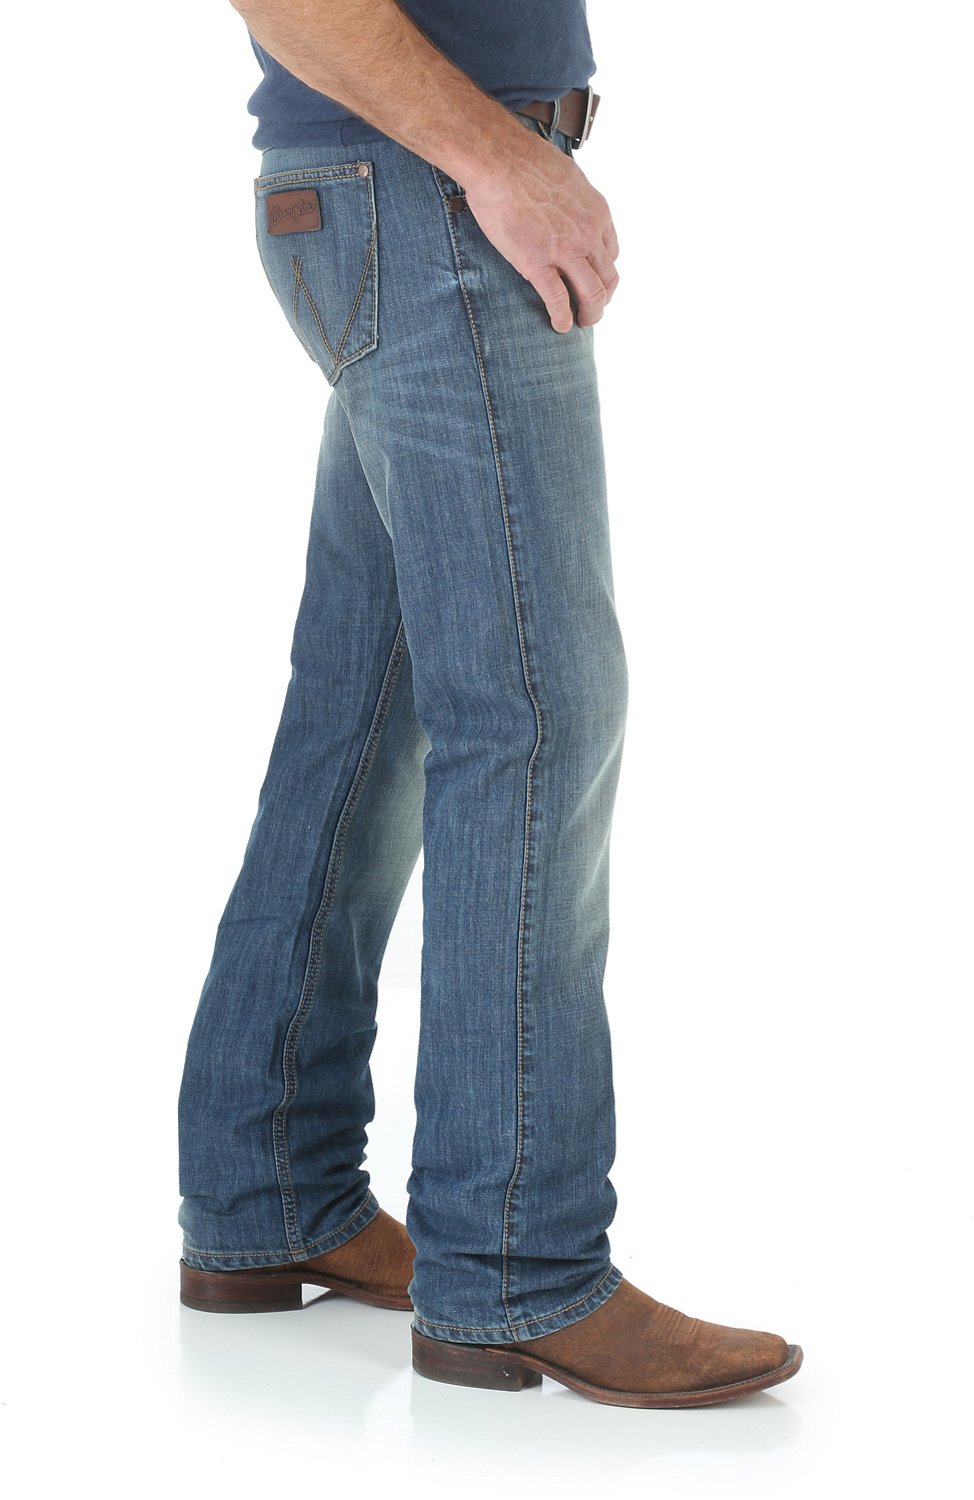 Wrangler Retro Jeans Academy Deals, SAVE 34% 